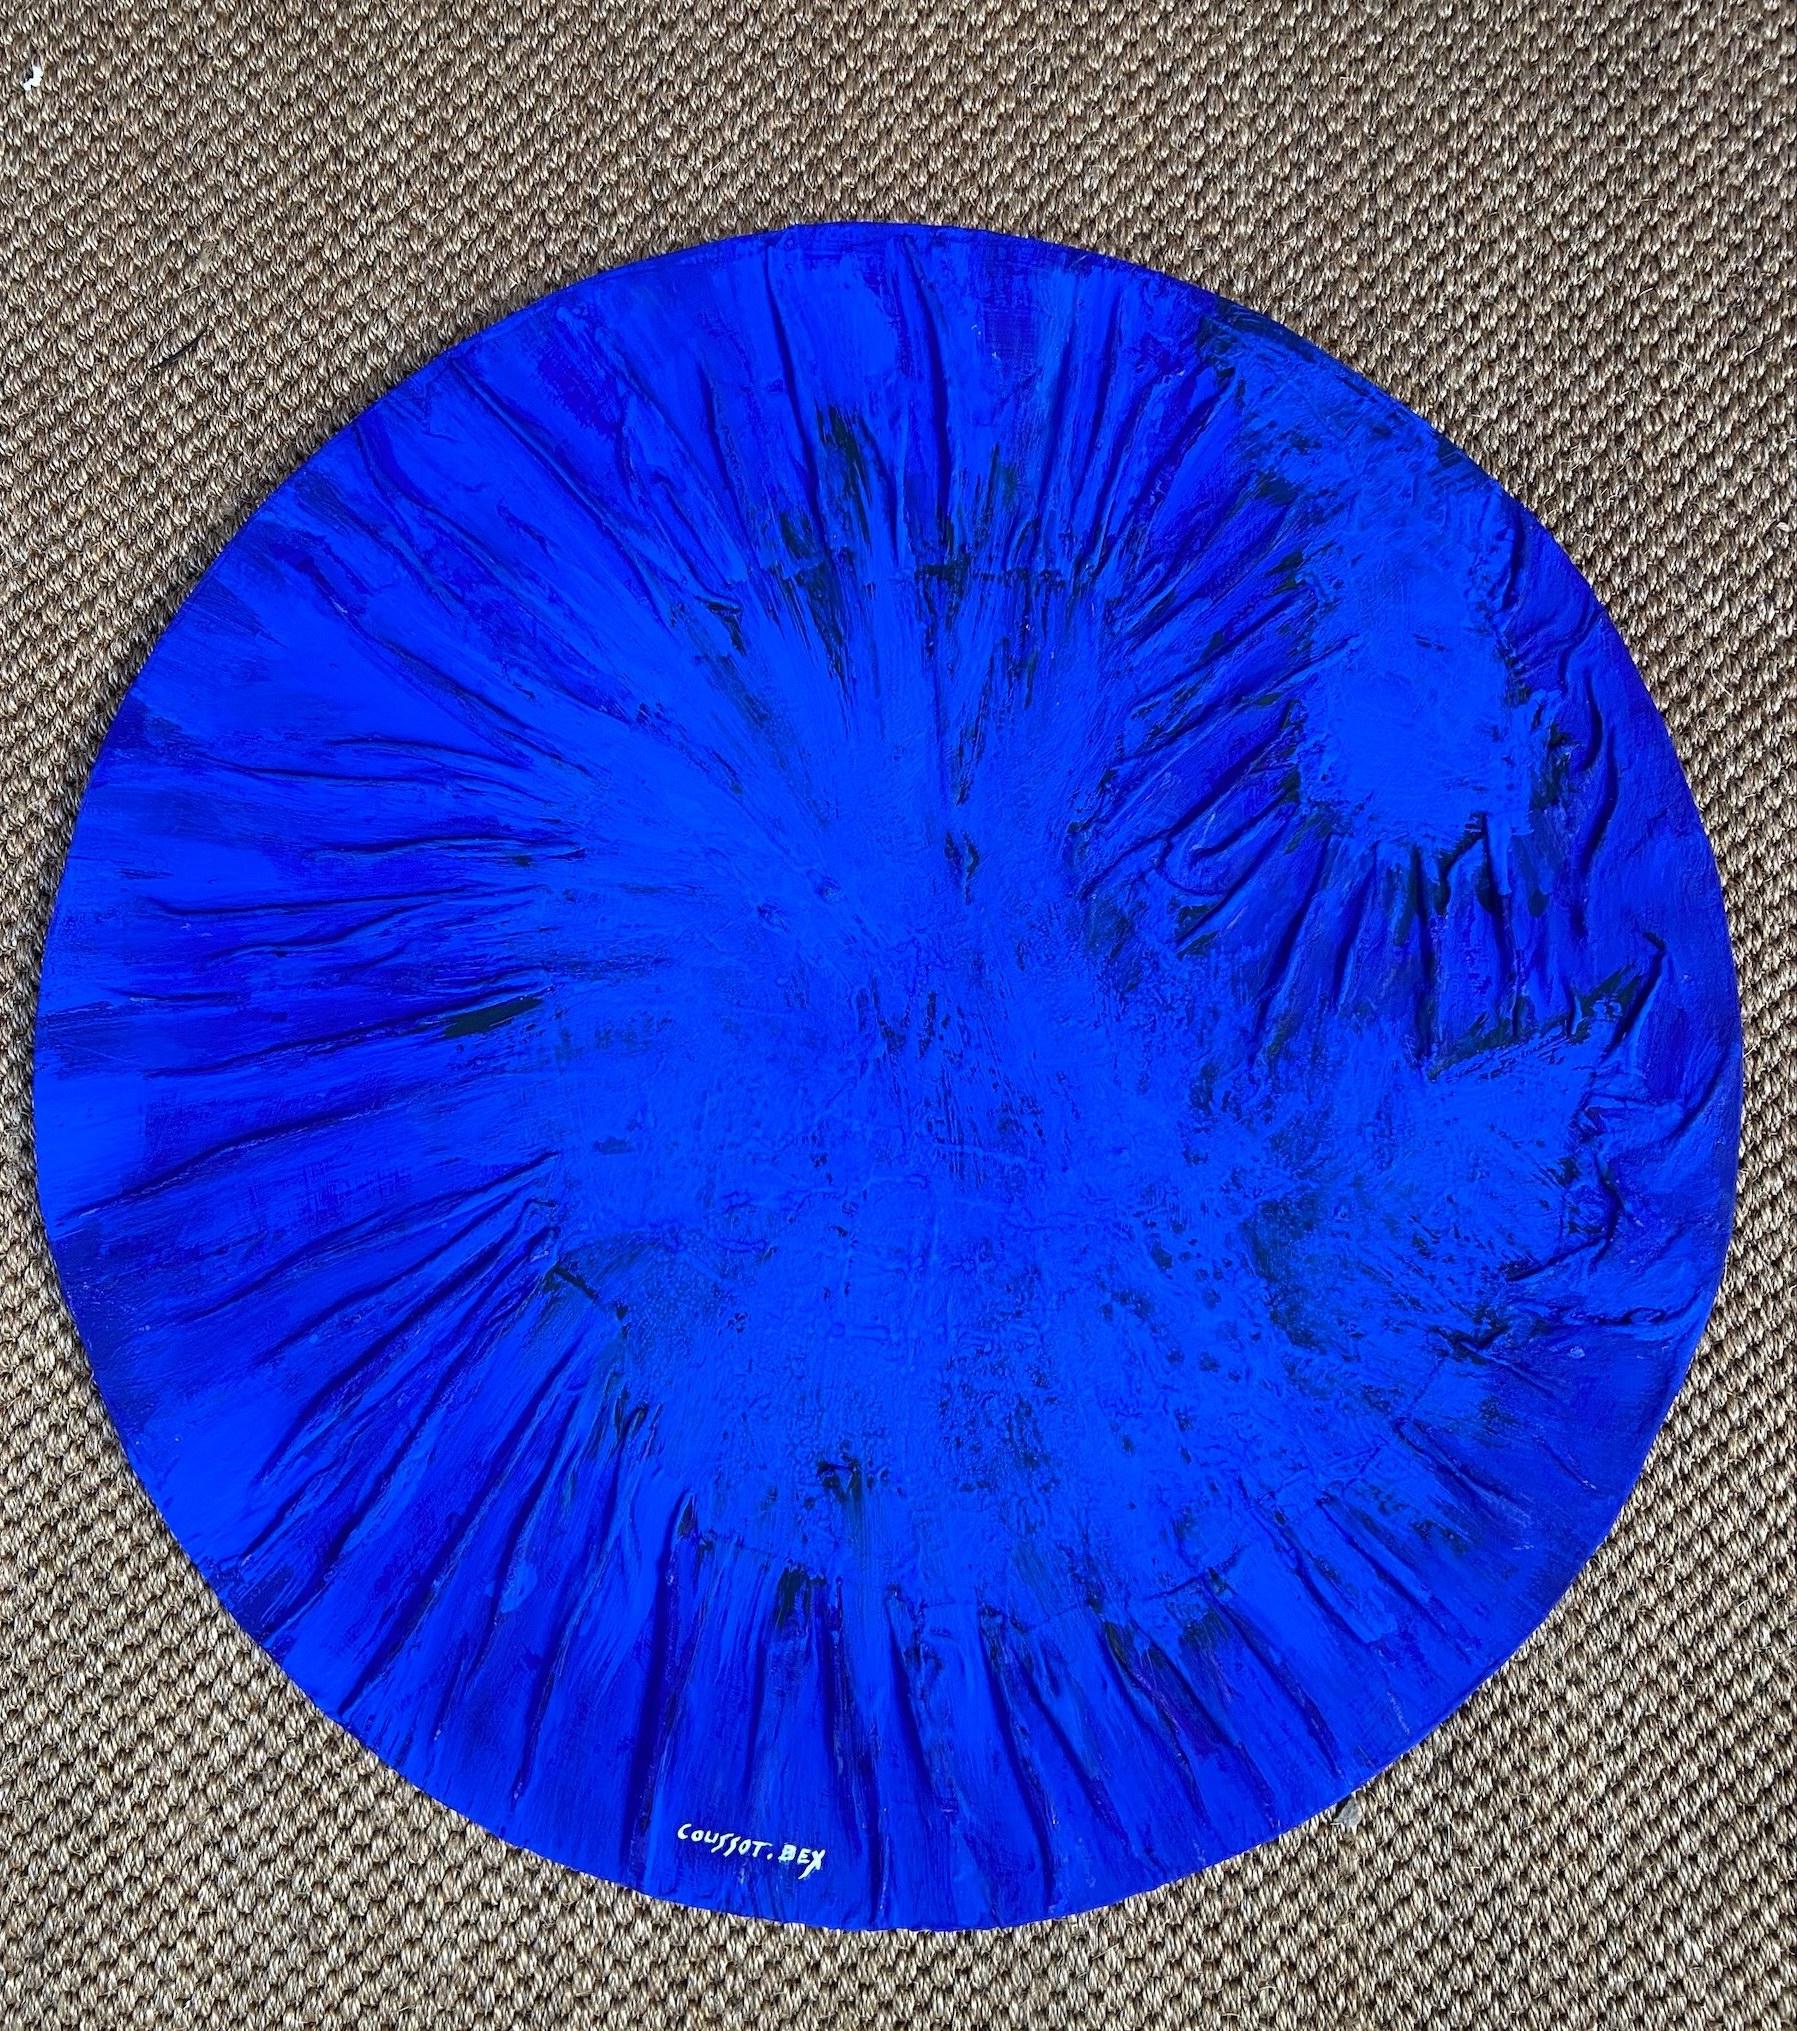 Coussot Bex - Blue circle 2
2021

Acrylic on panel

Measures: D78cm x P1cm

Signed.